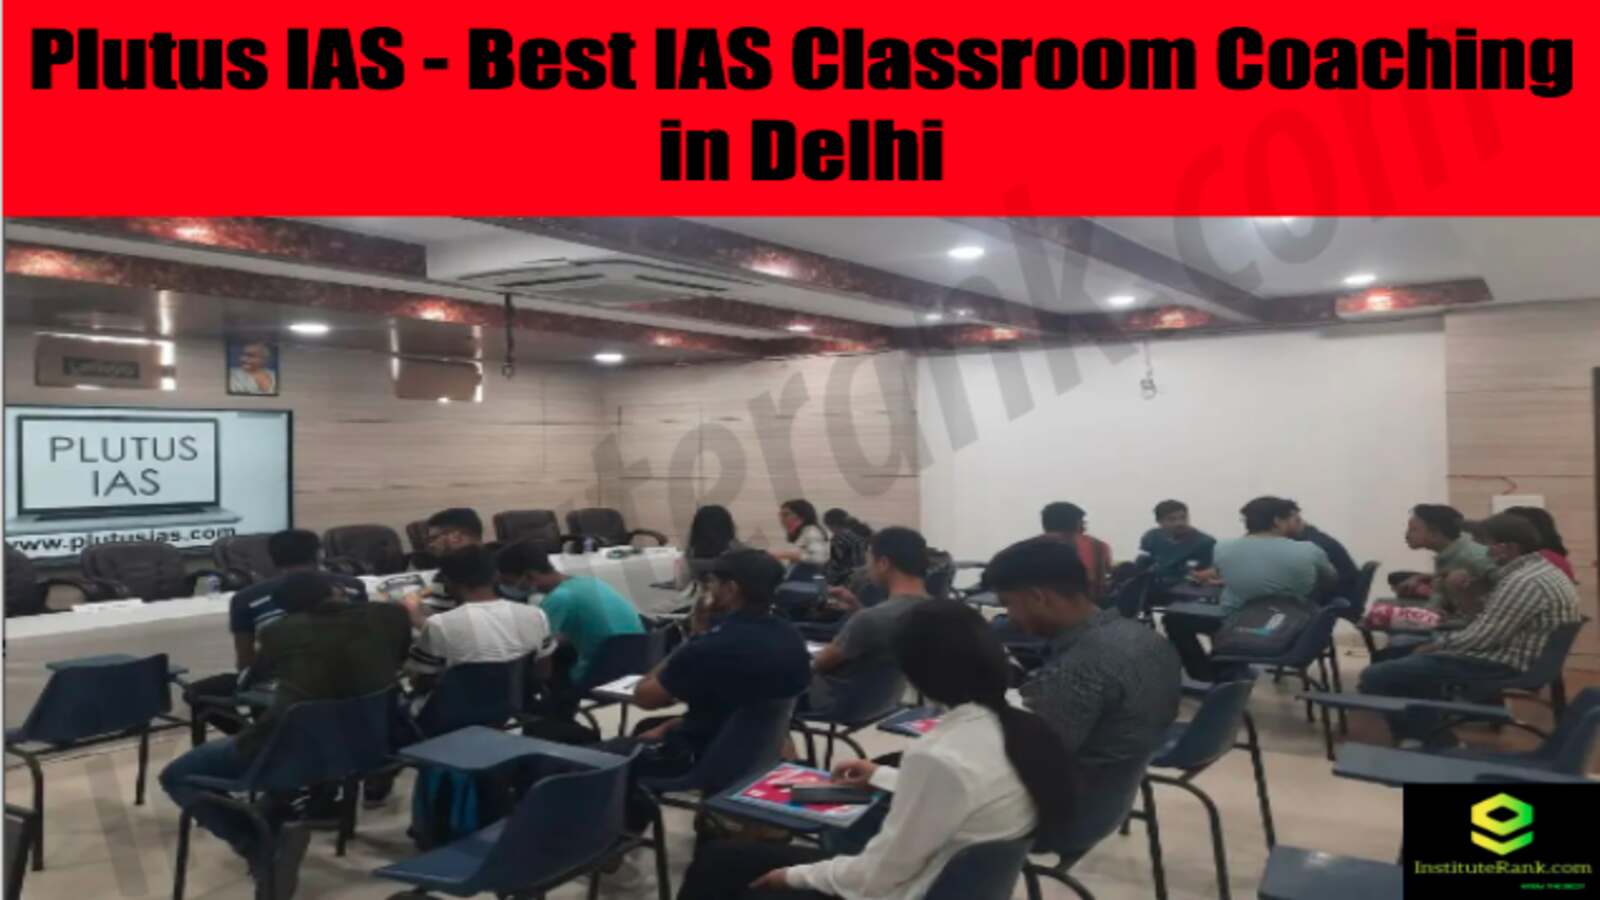 Plutus IAS Classroom Coaching in Delhi